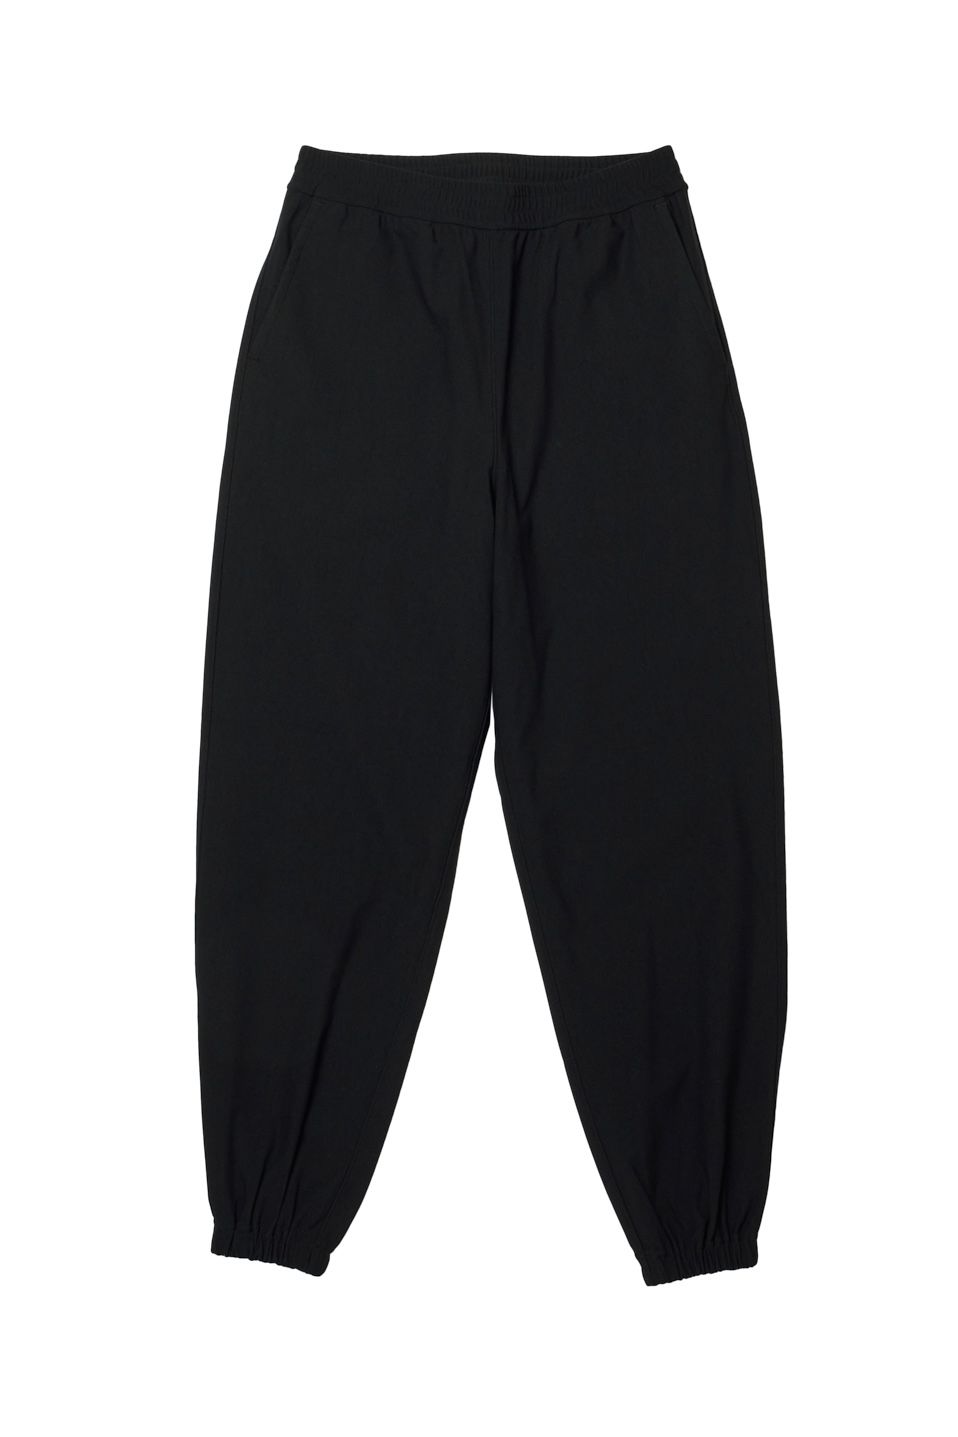 DAIWA PIER39 - w's tech flex jersey pants -black- 23ss women